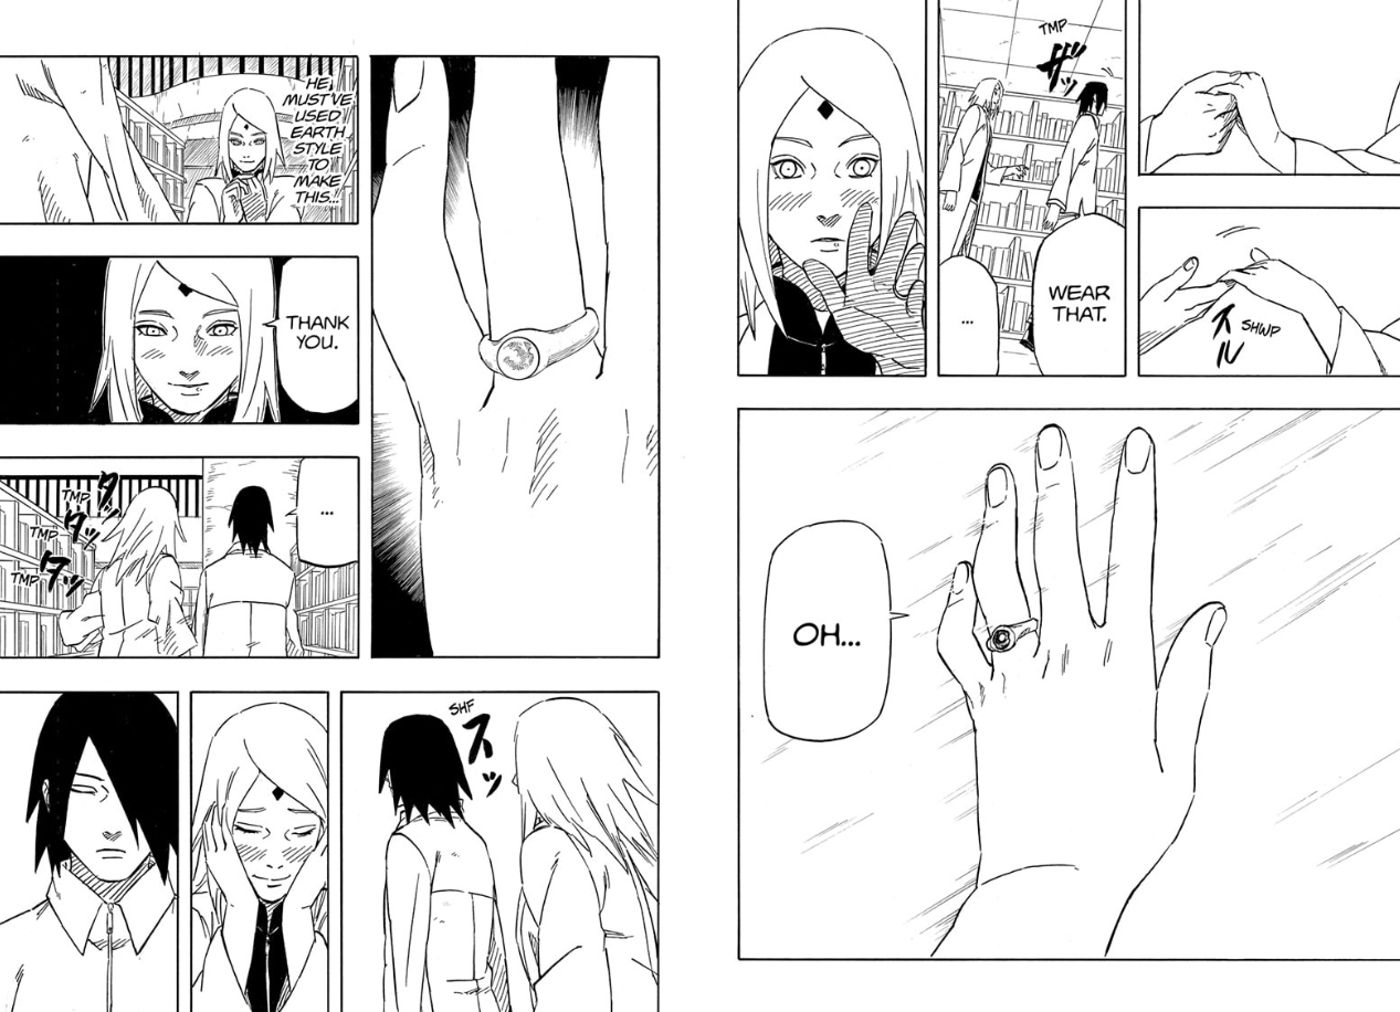 sasuke-gives-sakura-wedding-ring